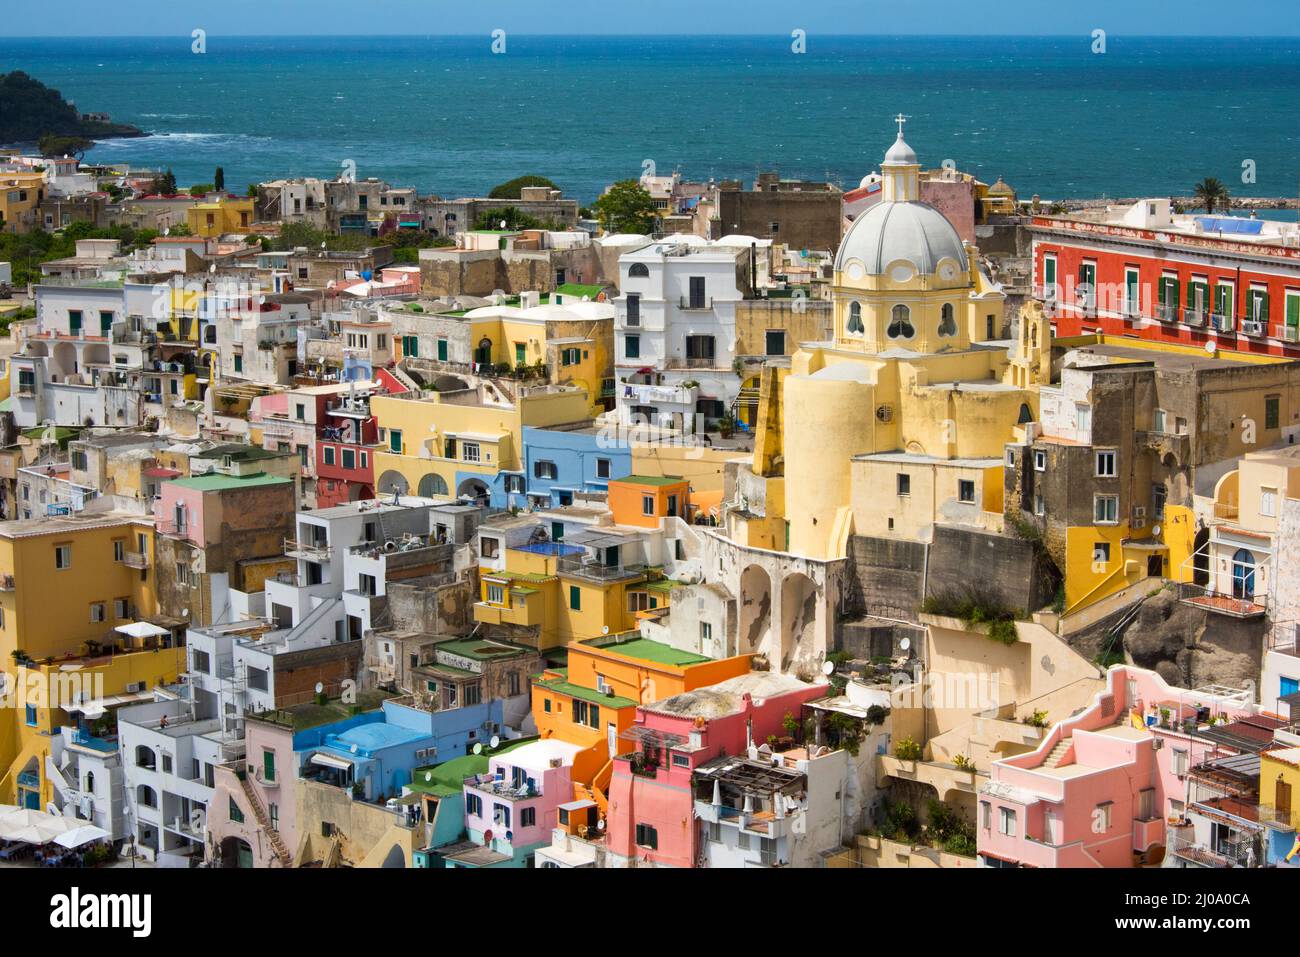 Santuario de Santa Maria delle Grazie y coloridas casas a lo largo del puerto, Procida, Nápoles, región de Campania, Italia Foto de stock